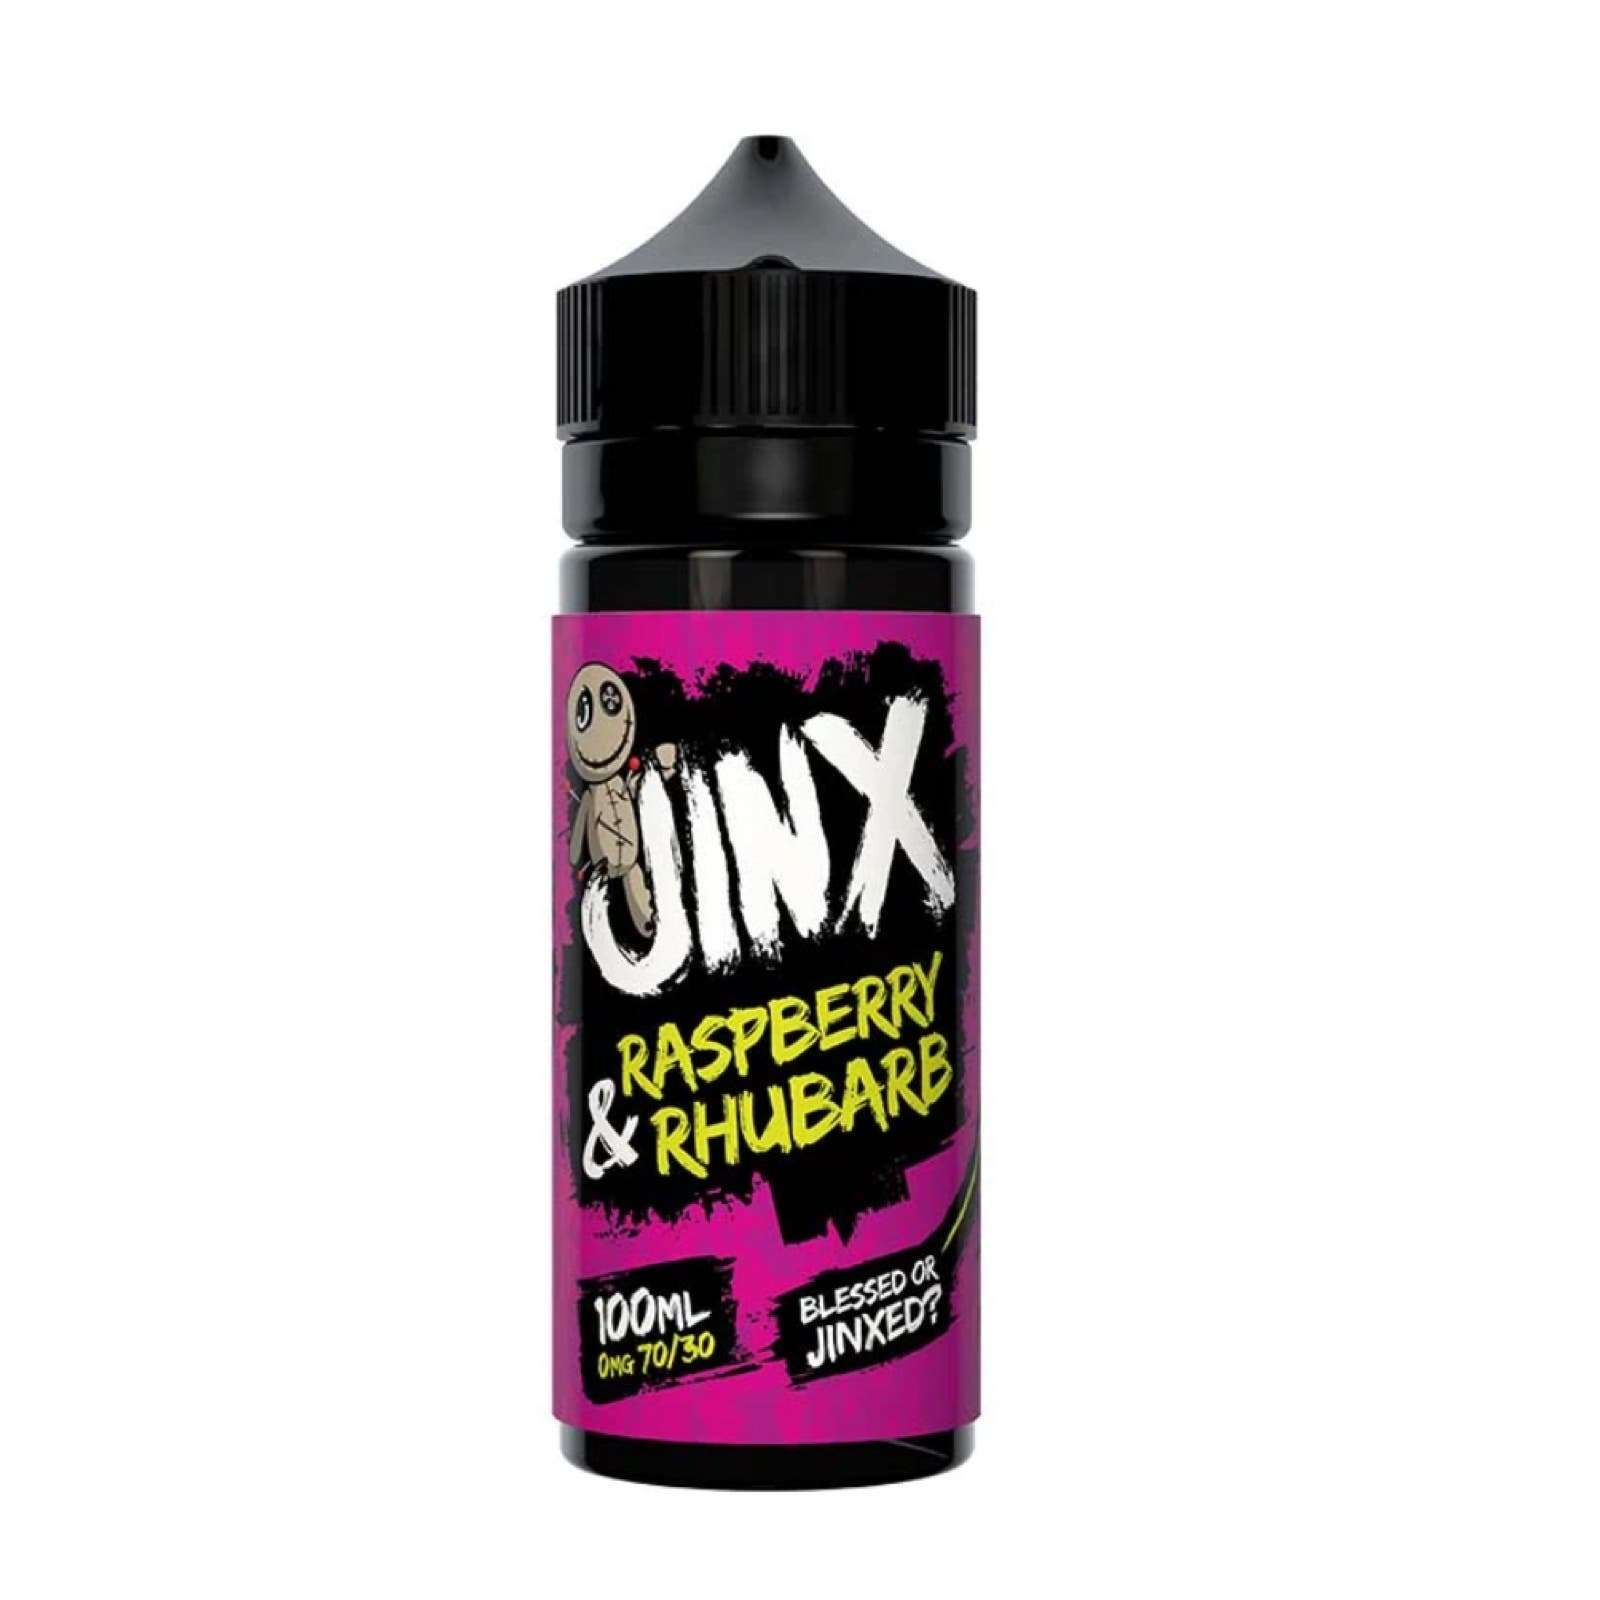  Jinx E Liquid - Raspberry & Rhubarb - 100ml 